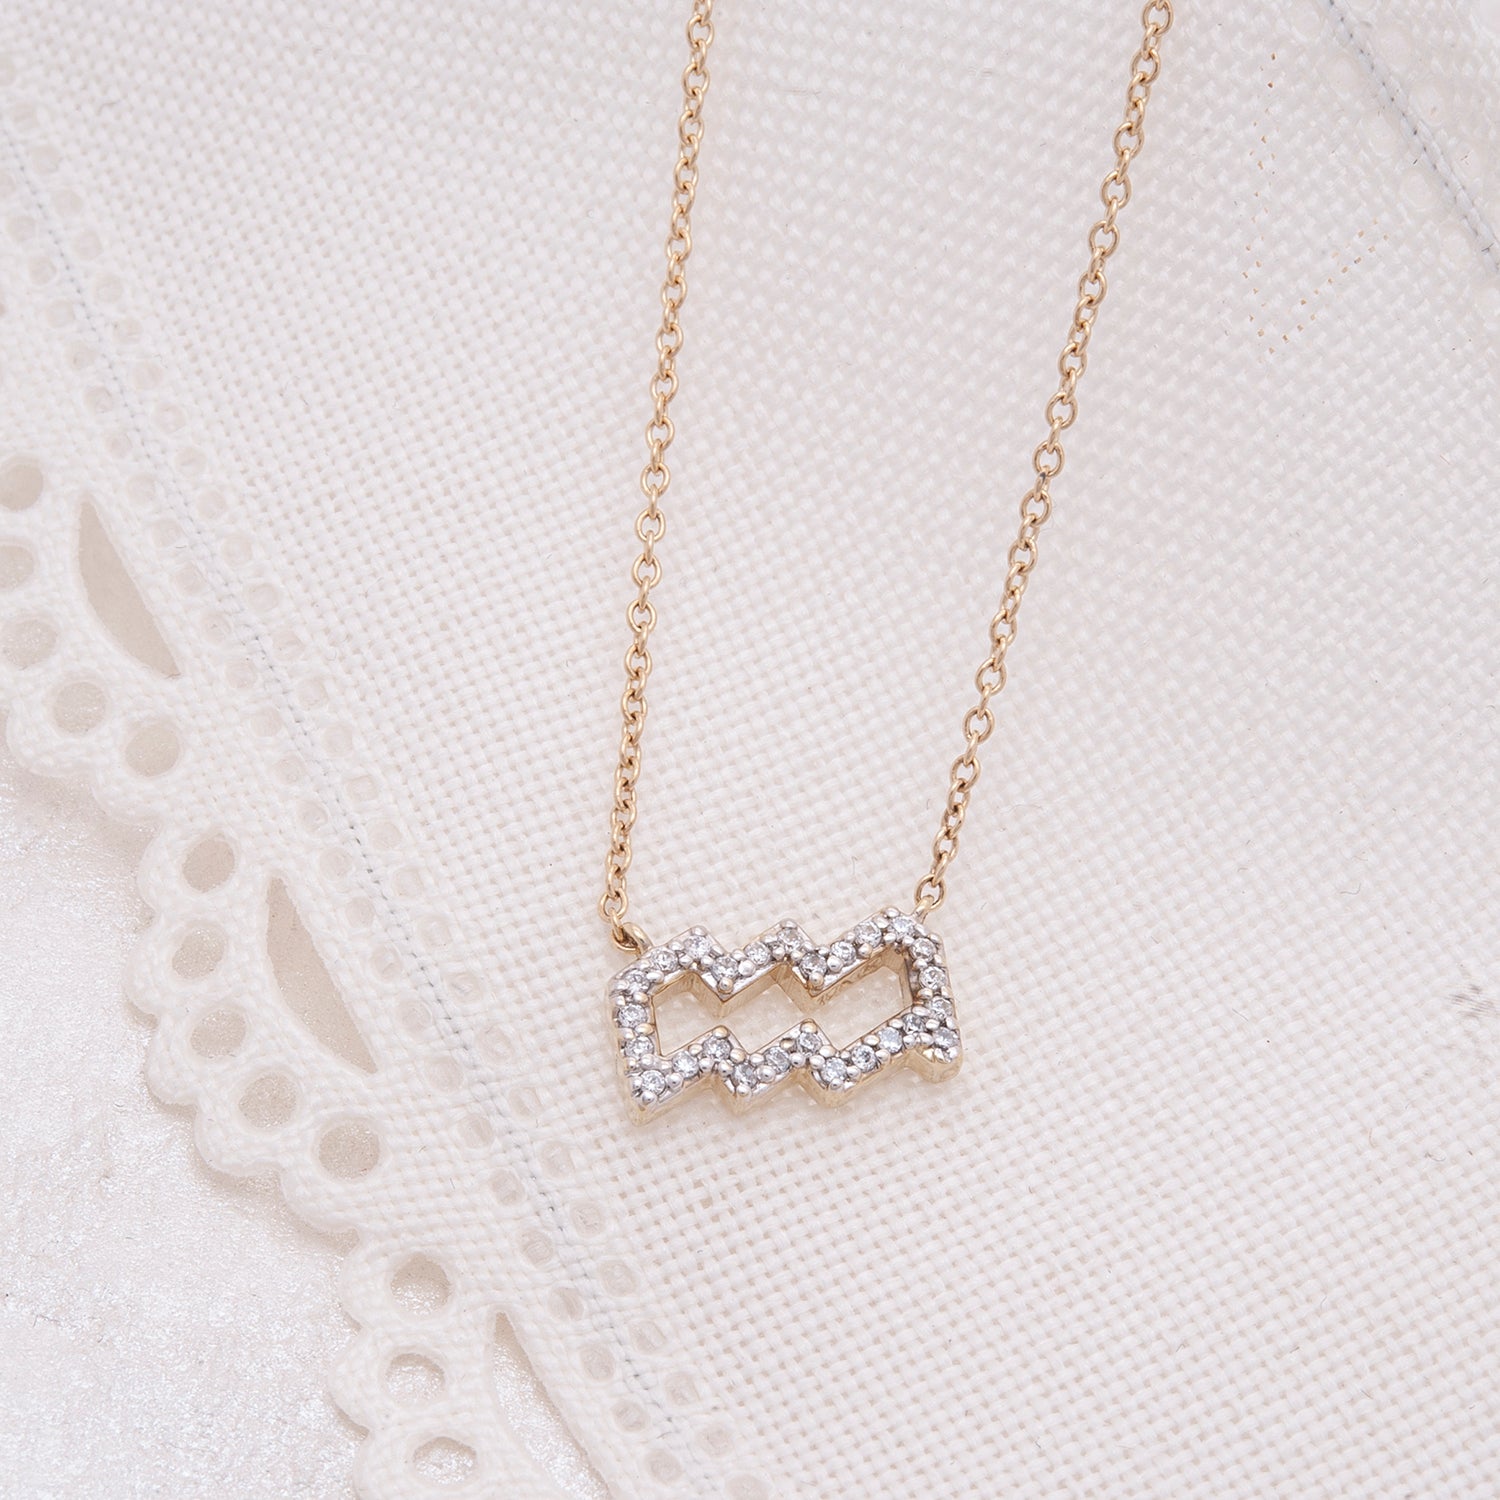 Zodiac Diamond Necklace with chain